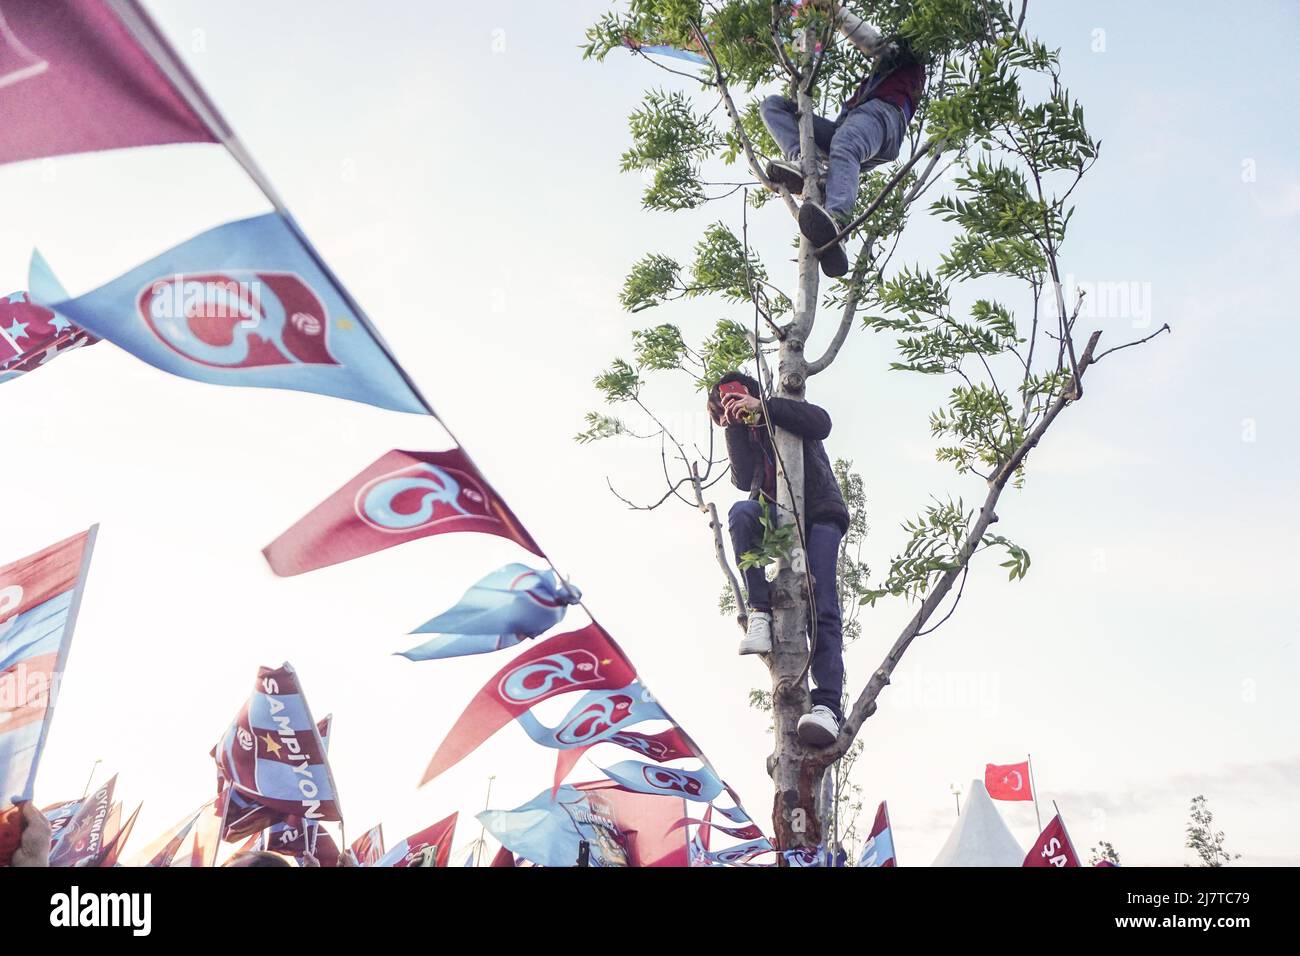 Estambul, Turquía. 8th de mayo de 2022. Los aficionados vieron subir por los árboles durante las celebraciones. Los fans de Trabzonspor continuaron con su celebración de ganar el título de la Super Liga Turca con un evento especial en Estambul. Trabzonspor ganó el título de la Super Liga Turca por primera vez desde 1984. Las celebraciones continuarán en la ciudad de Trabzon y en toda Turquía. (Imagen de crédito: © Ibrahim Oner/SOPA Images via ZUMA Press Wire) Foto de stock